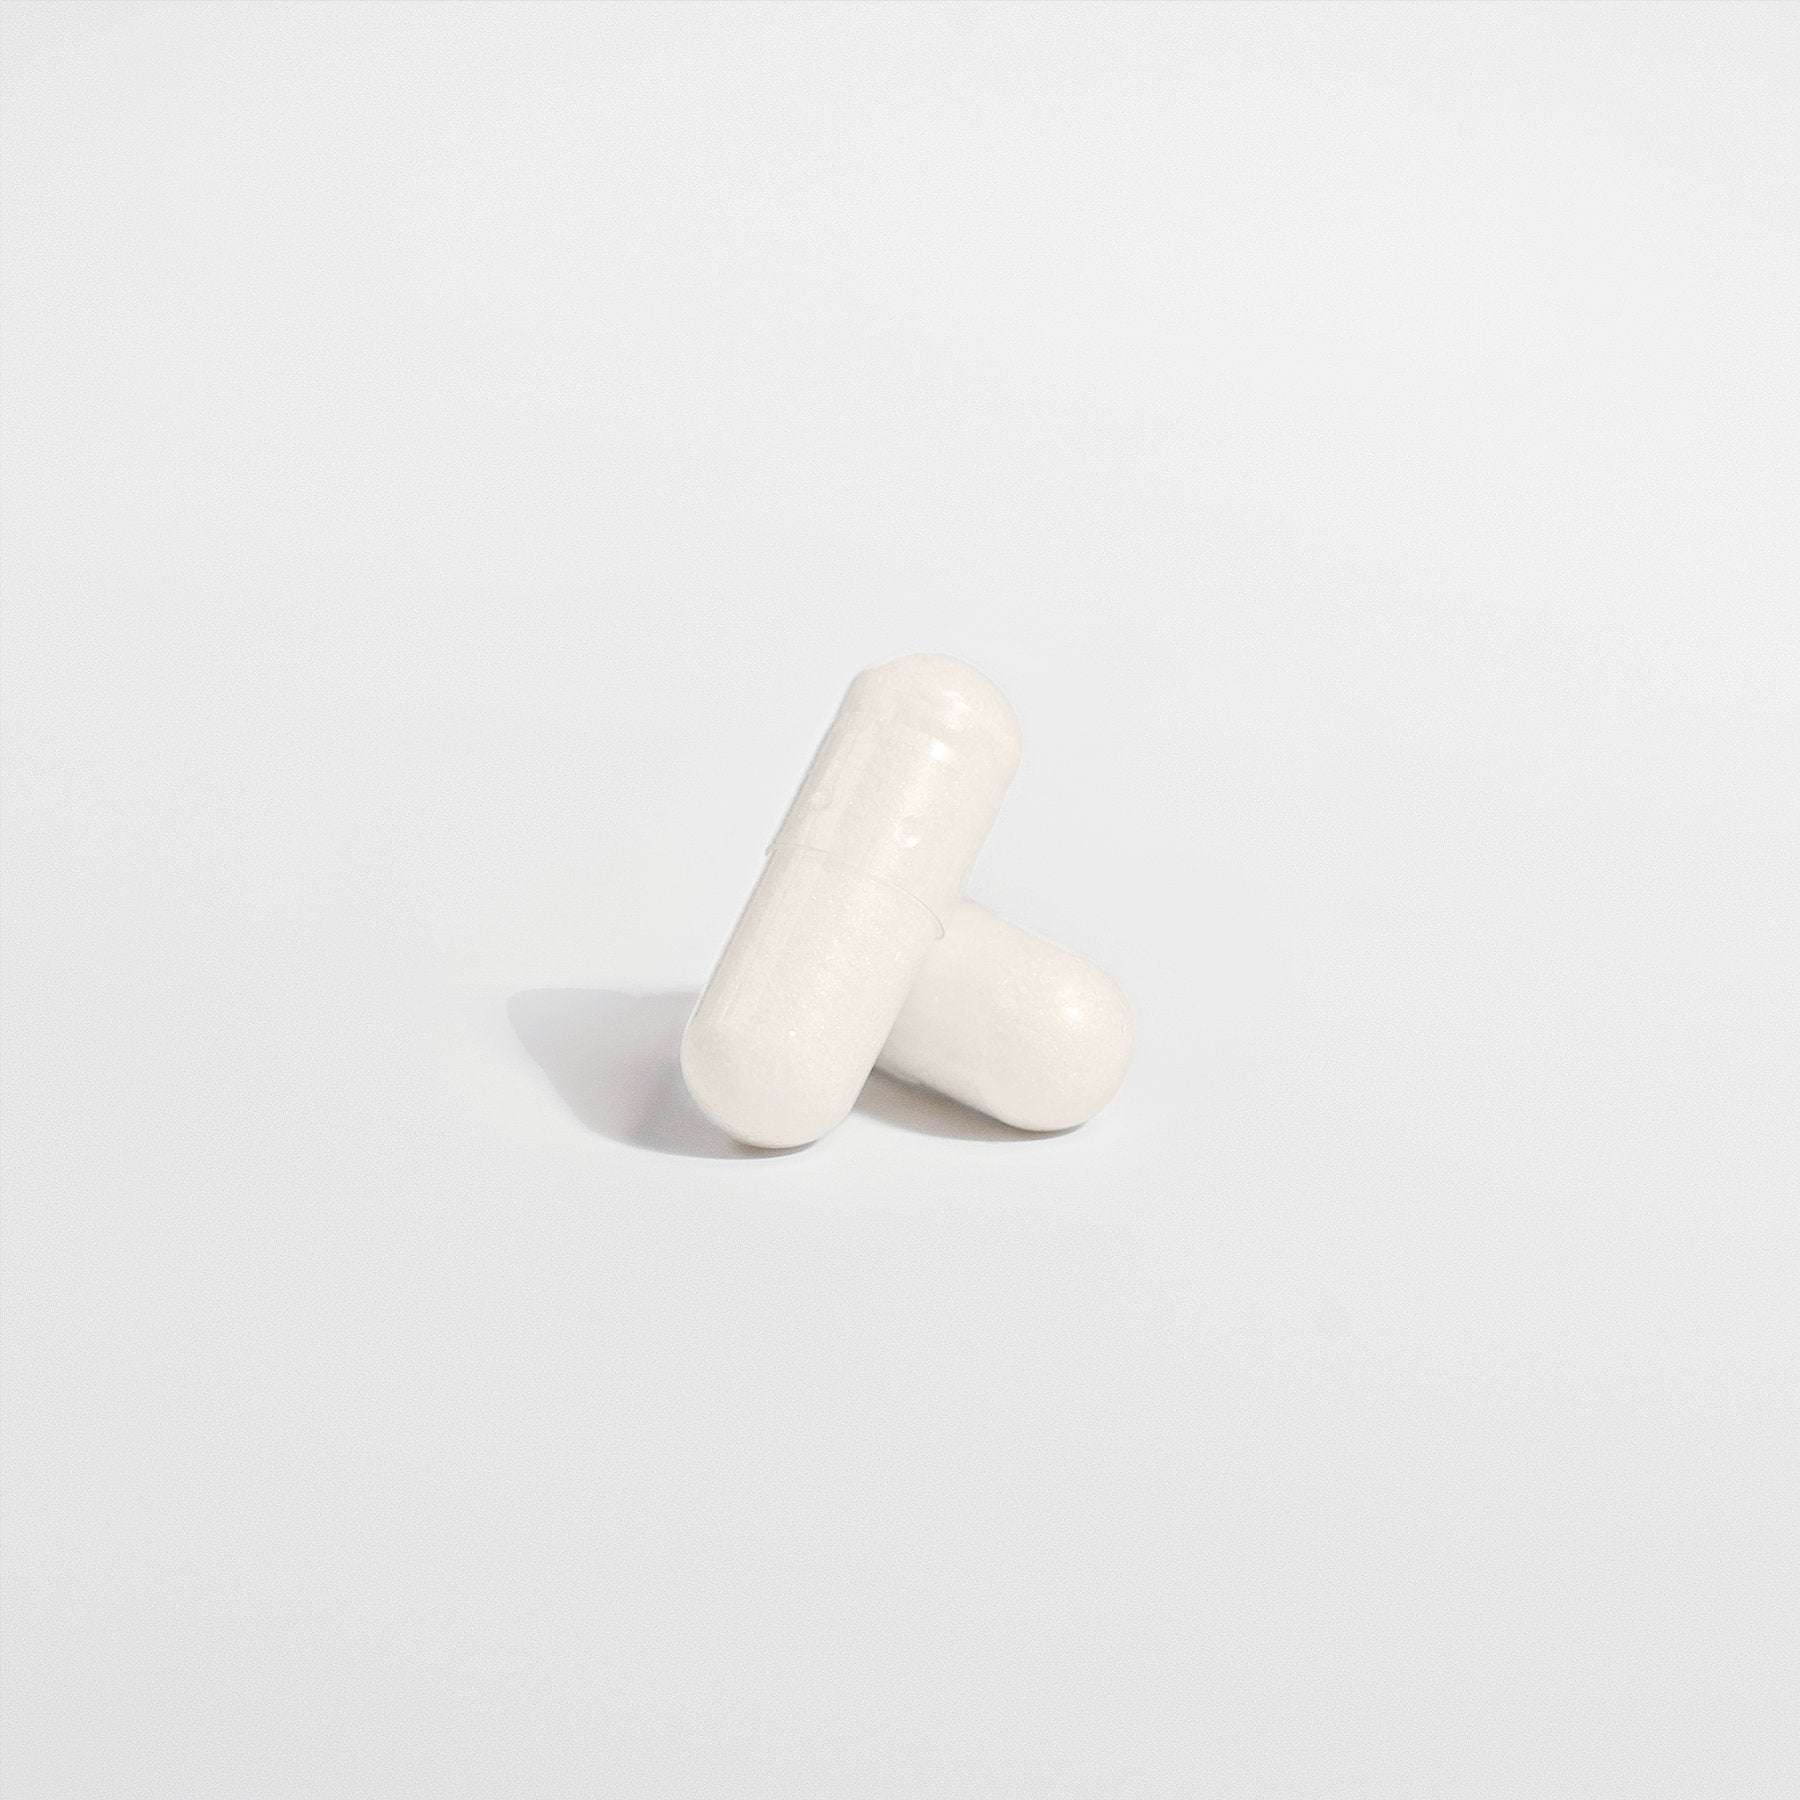 Chill Pill - 5-HTP